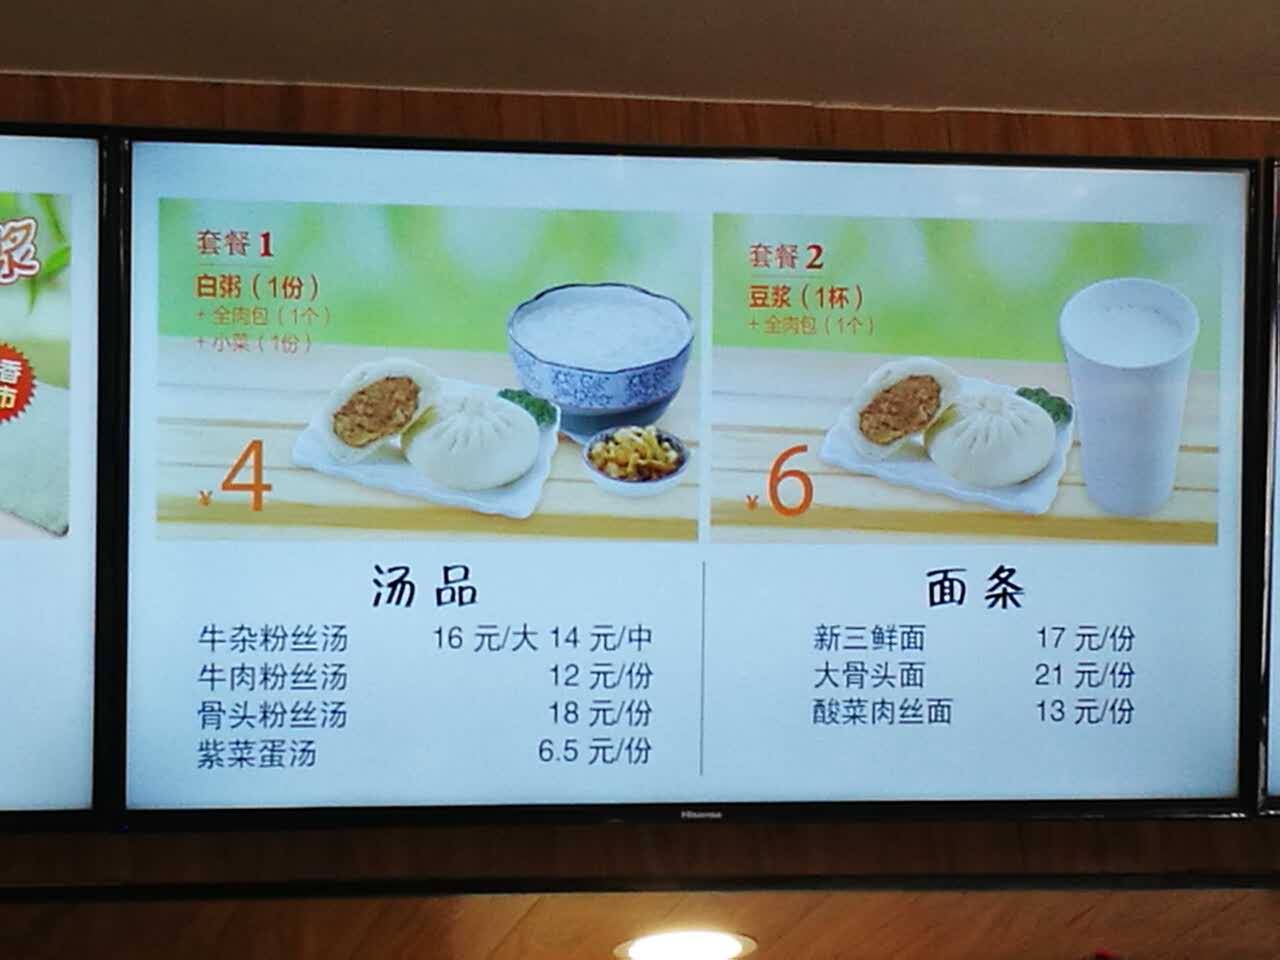 2021大娘水饺(江东北路龙江地铁店)美食餐厅,在地铁口很方便,7点钟